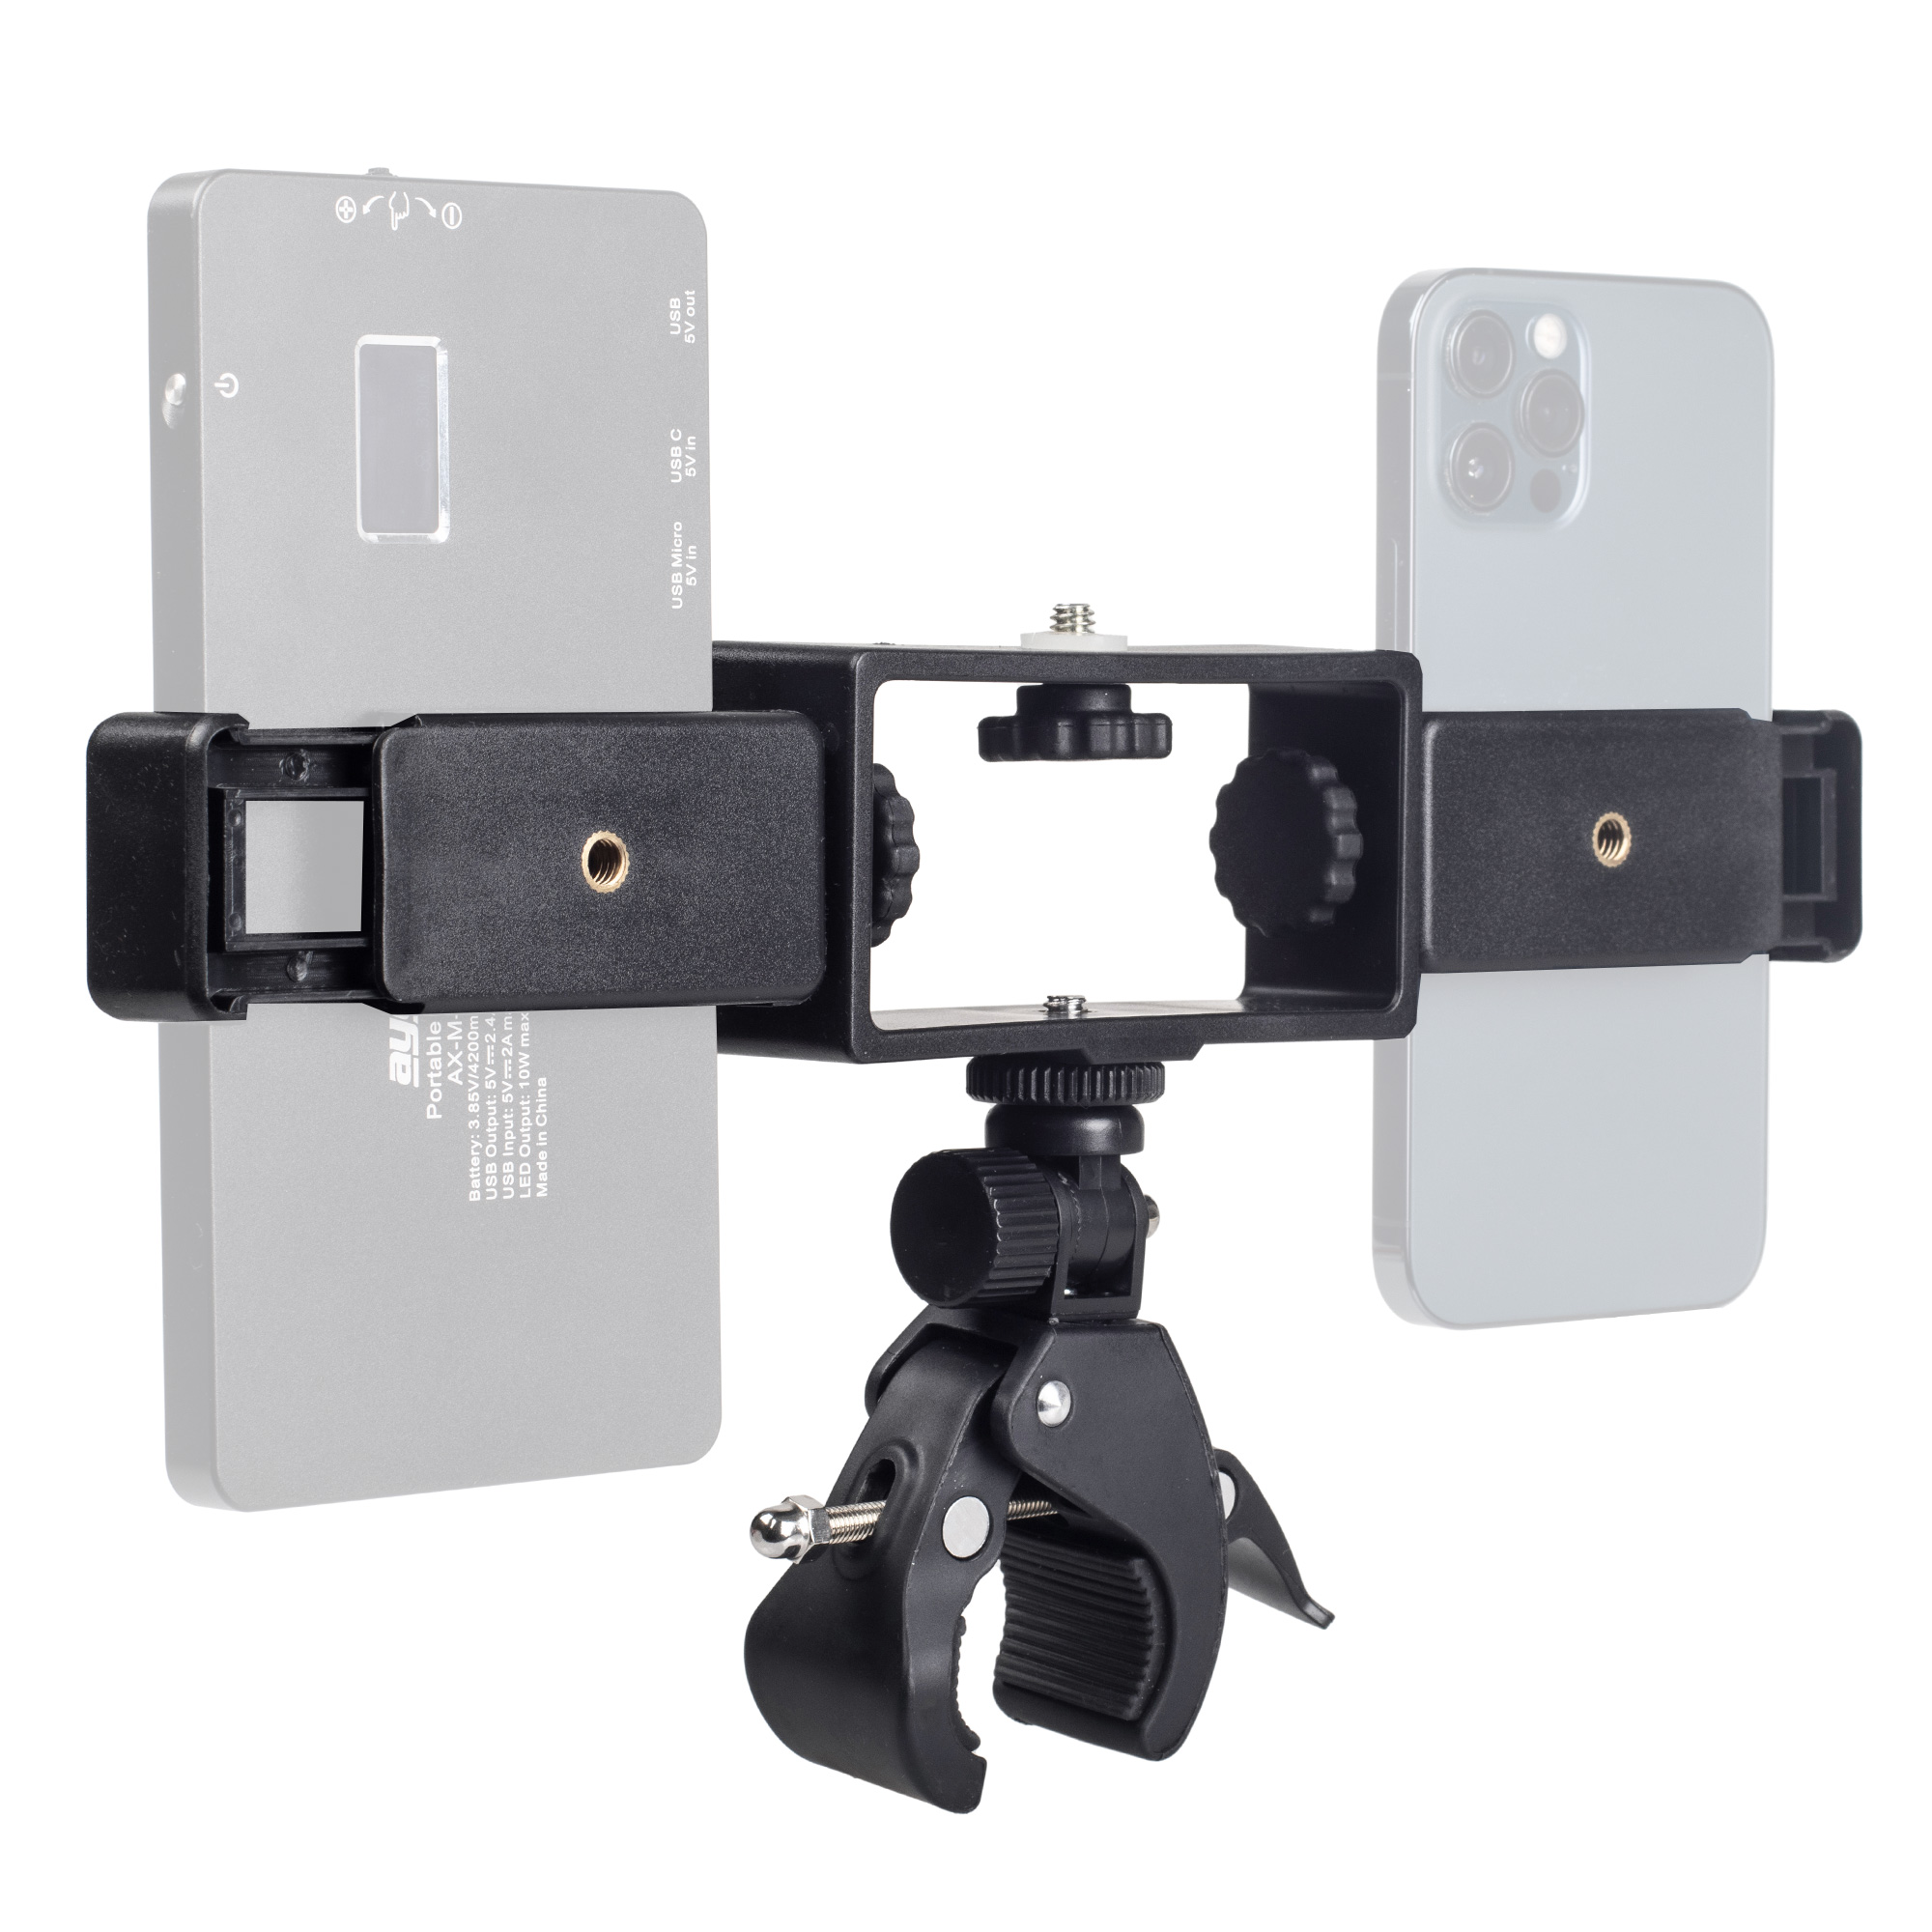 ayex Duale Smartphone-Halterung inkl. Universalklemme - Für 1/4 Zoll und Blitzschuh - Halterung für zwei Smartphones an z.B. Kamera & Stativ